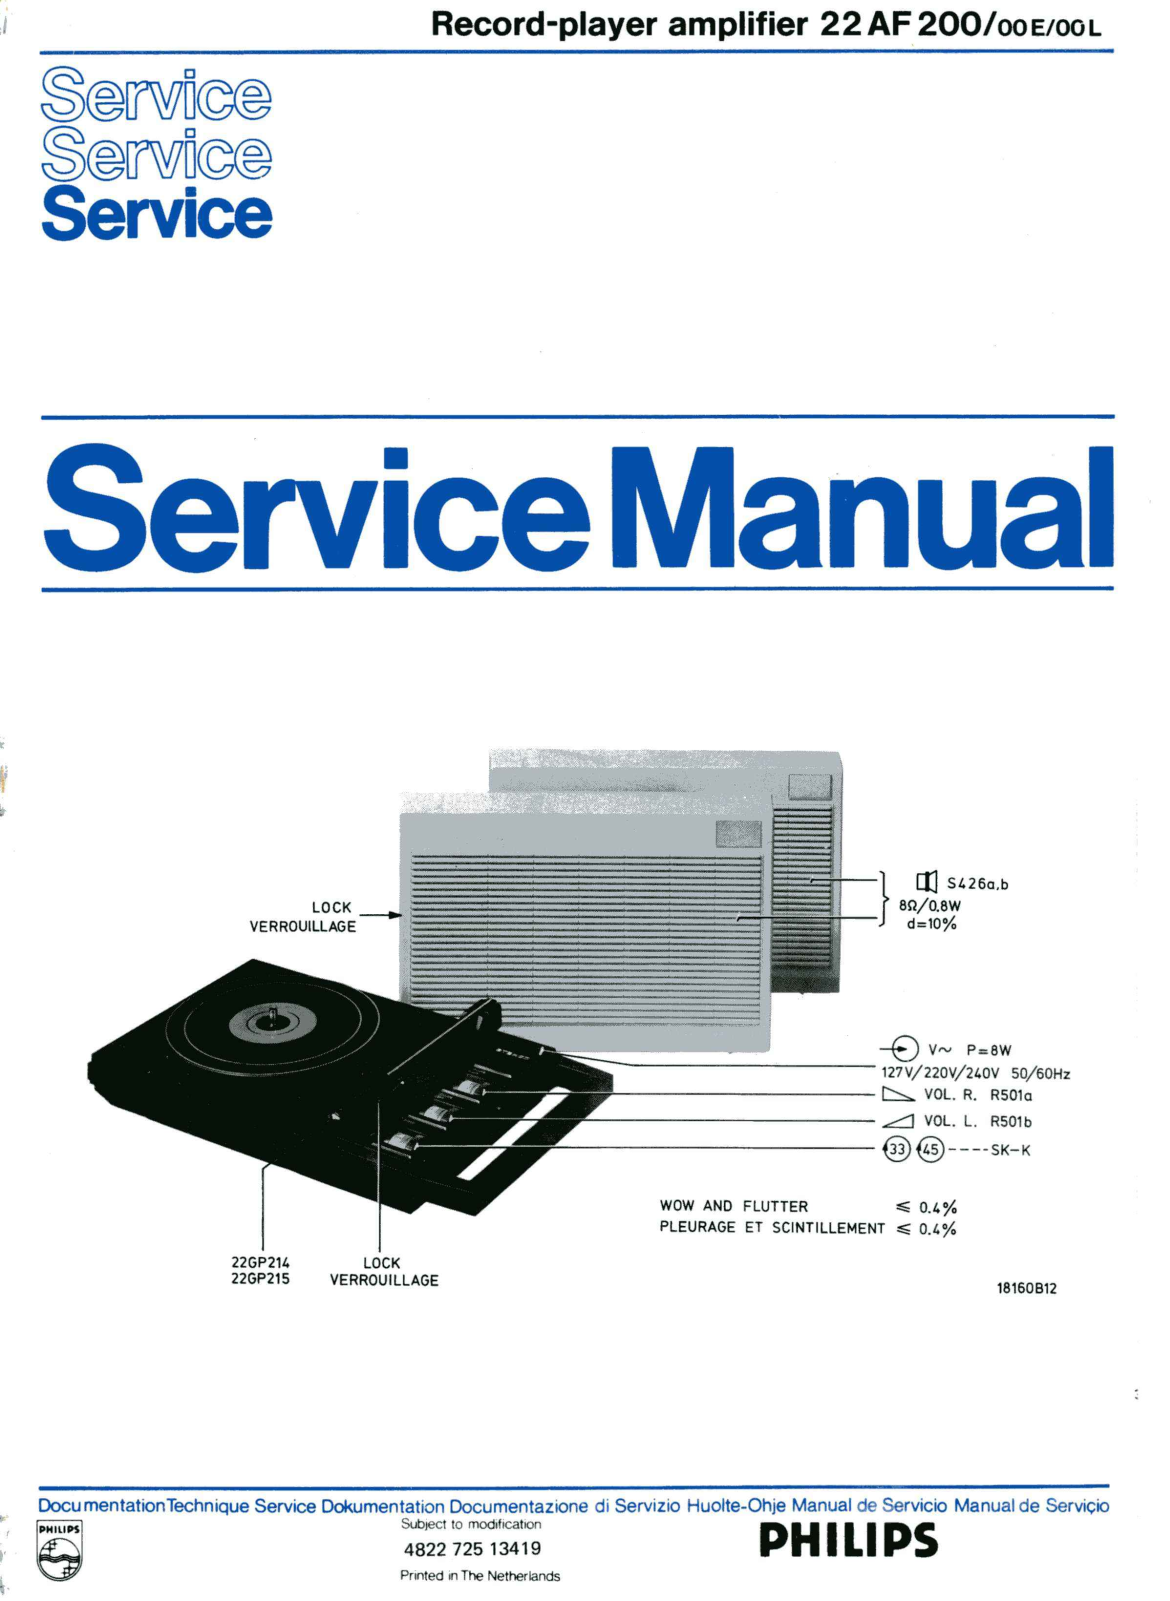 Philips 22-AF-200 Service Manual